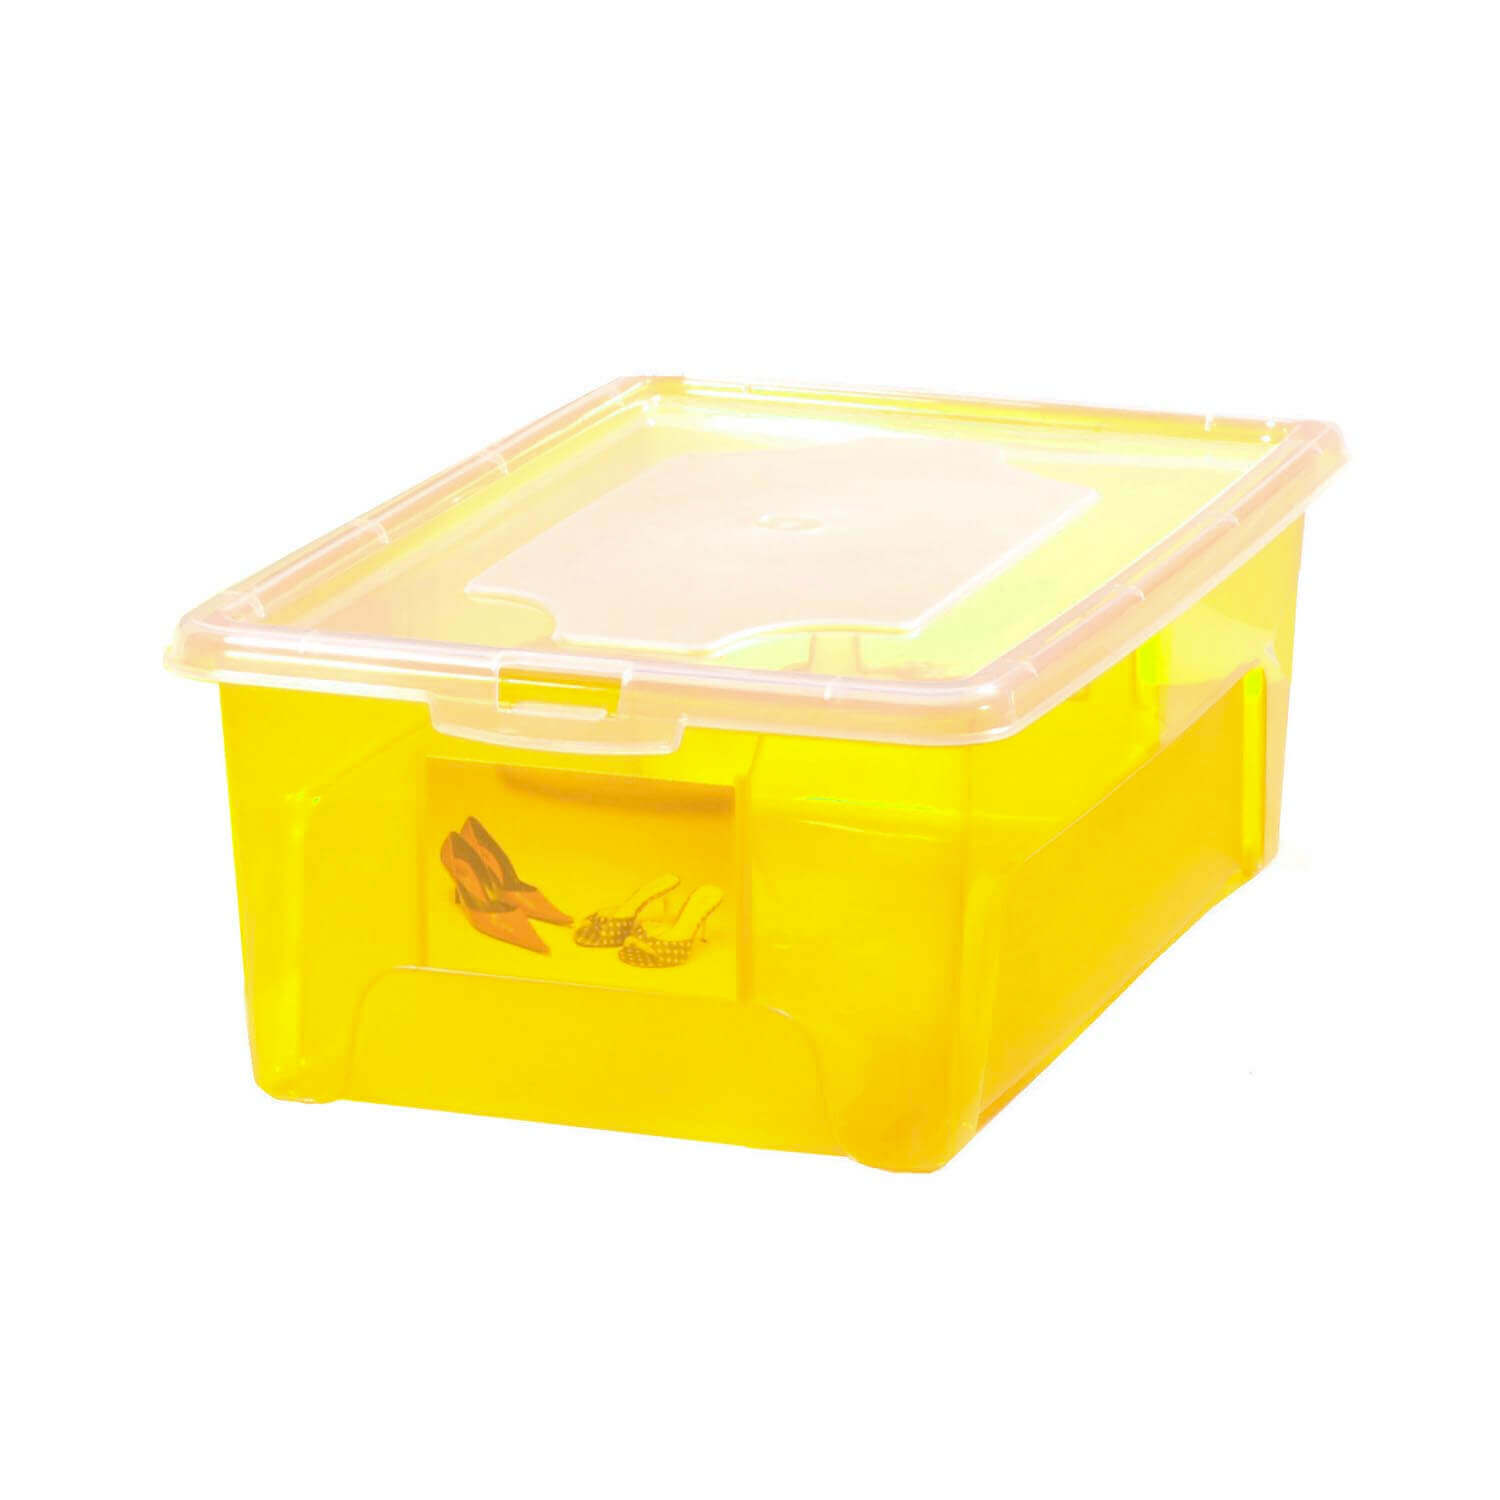 Aufbewahrungsbox "Easybox" 2 L in gelb, Kunststoffbox